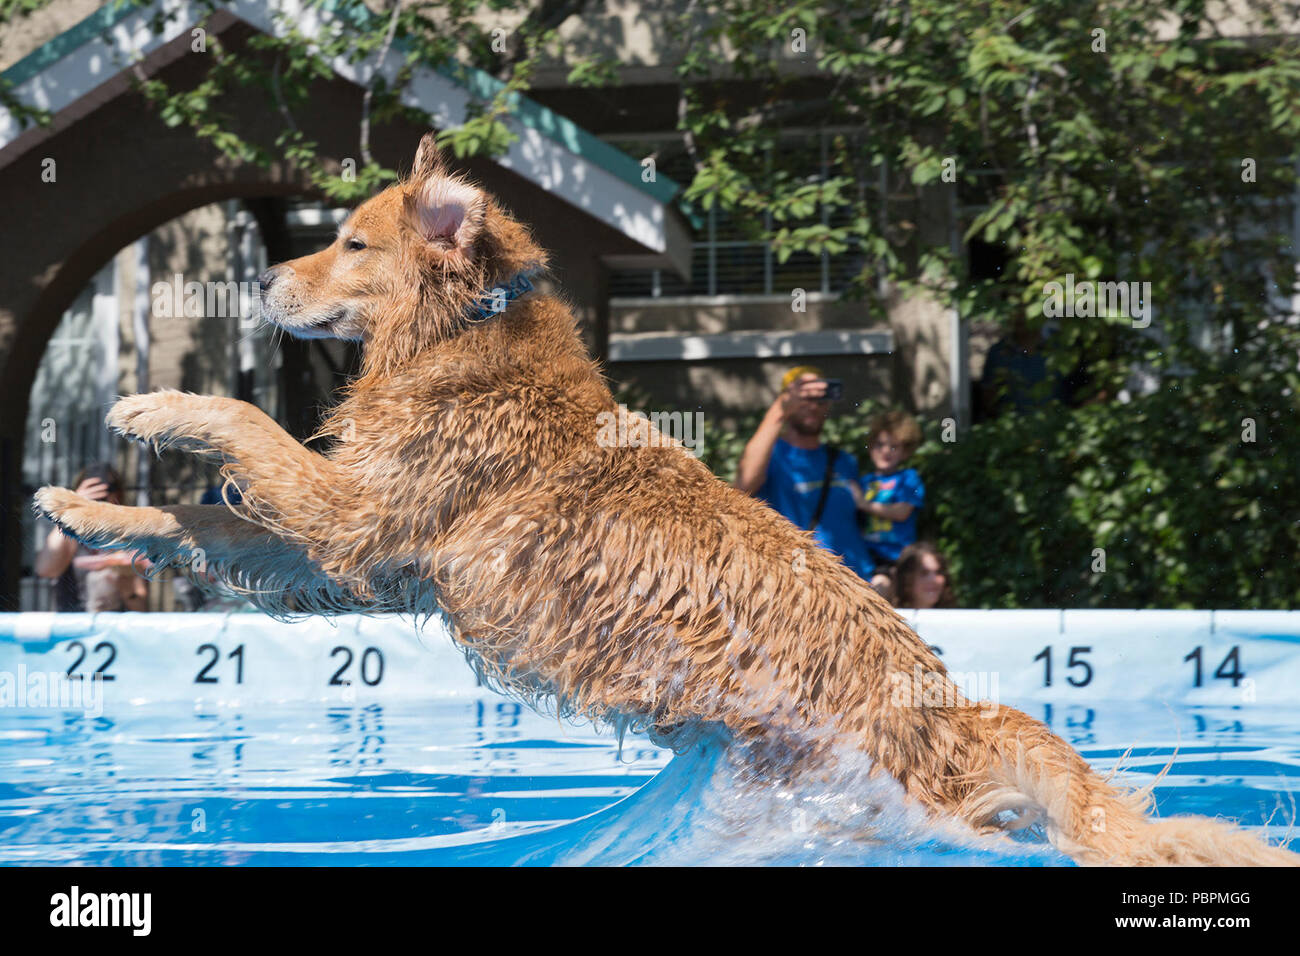 Calgary, Kanada. 28. Juli 2018. Hund springt in den Pool beim Skispringen. Canine Wassersport sind Teil der PET-a-Palooza, einem Outdoor pet-Festival. Rosanne Tackaberry/Alamy leben Nachrichten Stockfoto